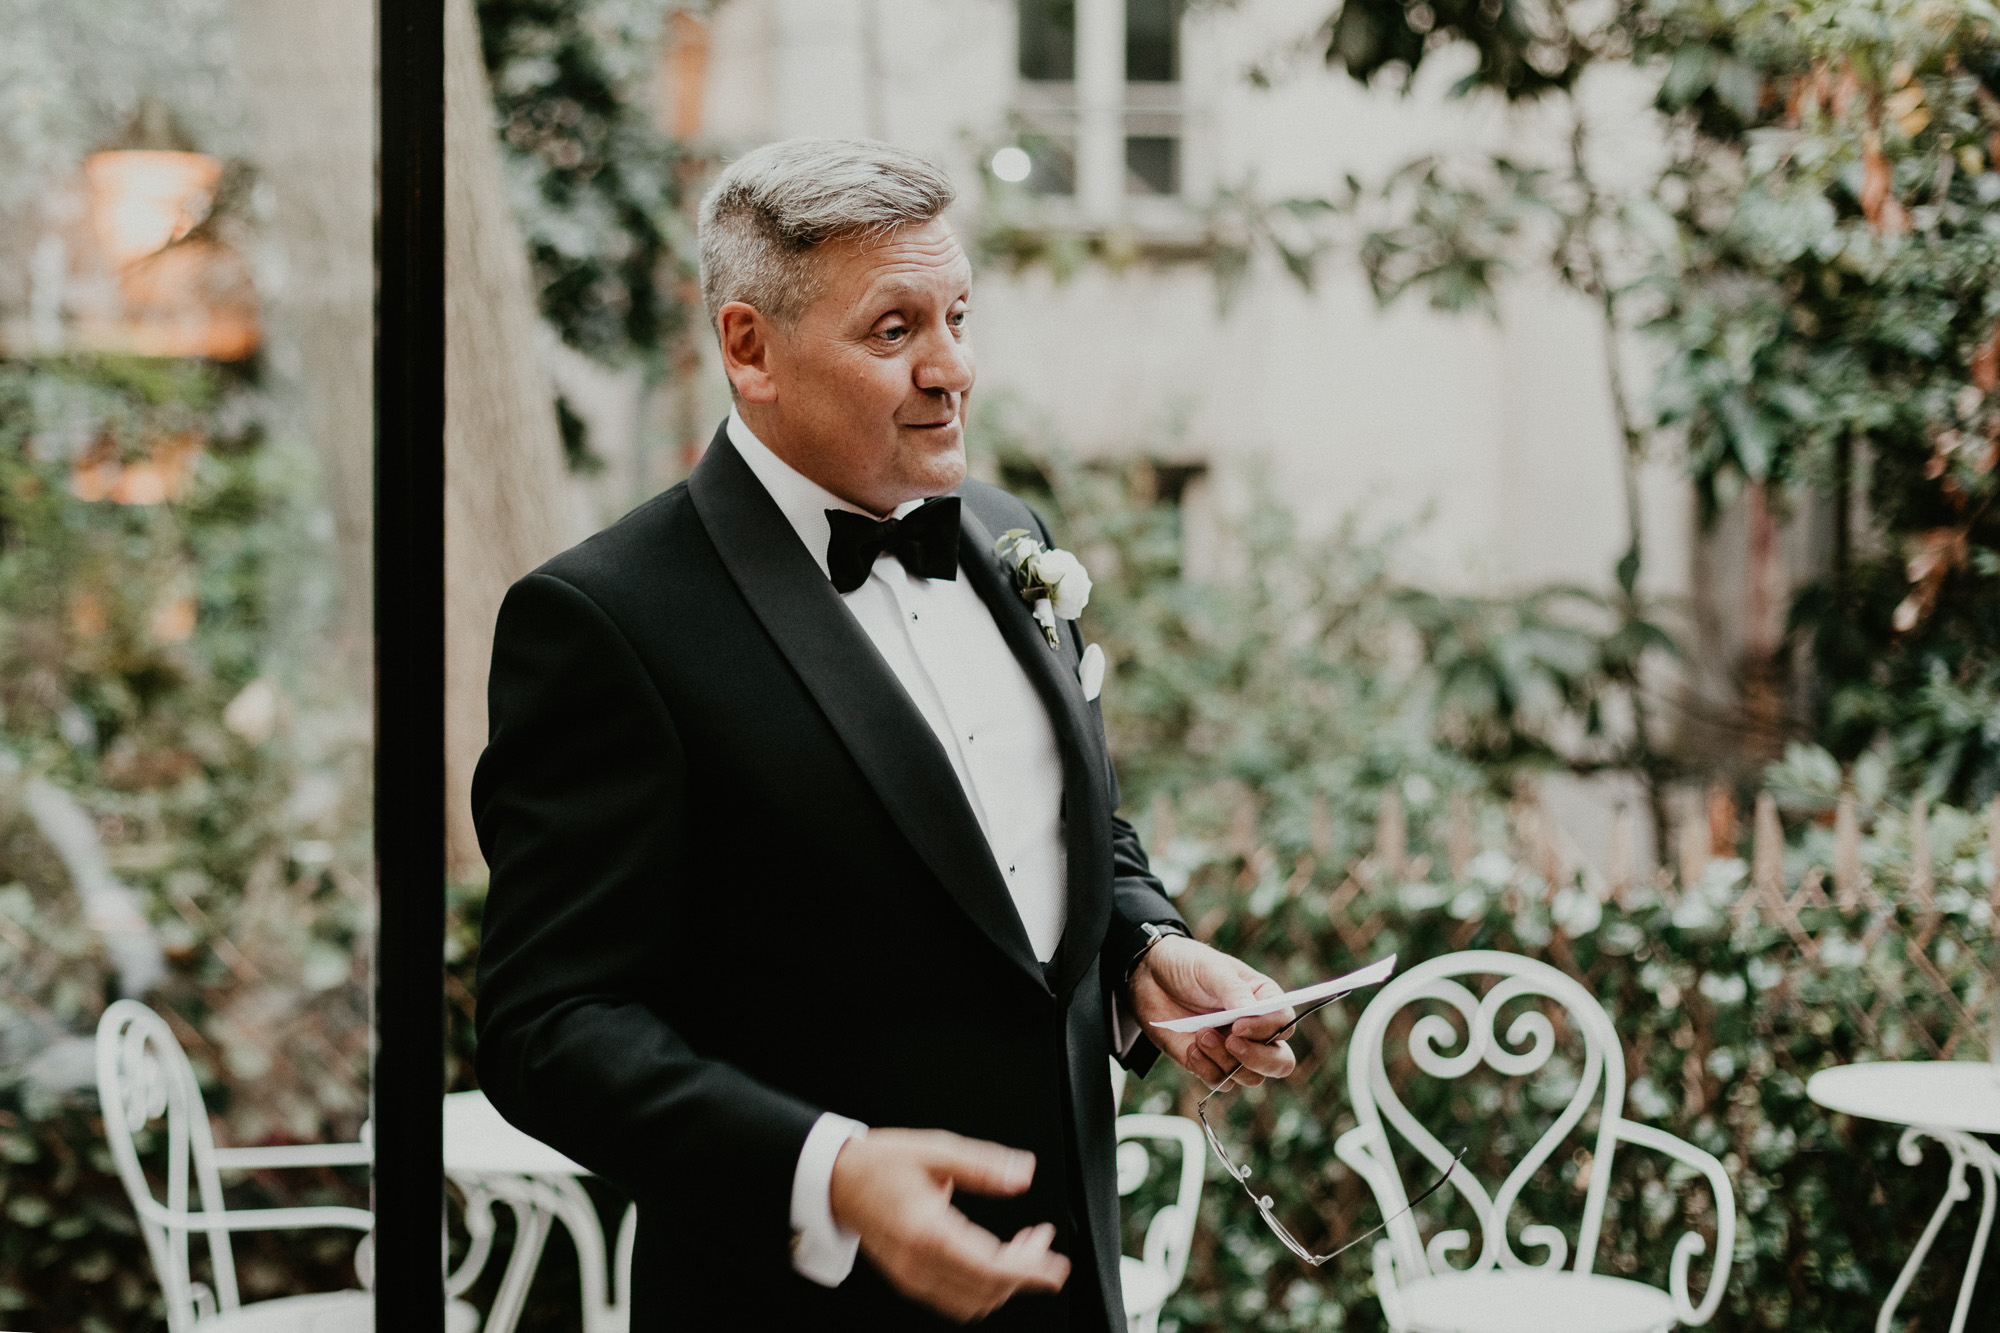 Le père de la mariée lance les festivités des discours avant le diner, le tout dans le décor cosy du Très Particulier, le bar de l'Hôtel Particulier à Montmartre qui avait été privatisé pour l'occasion